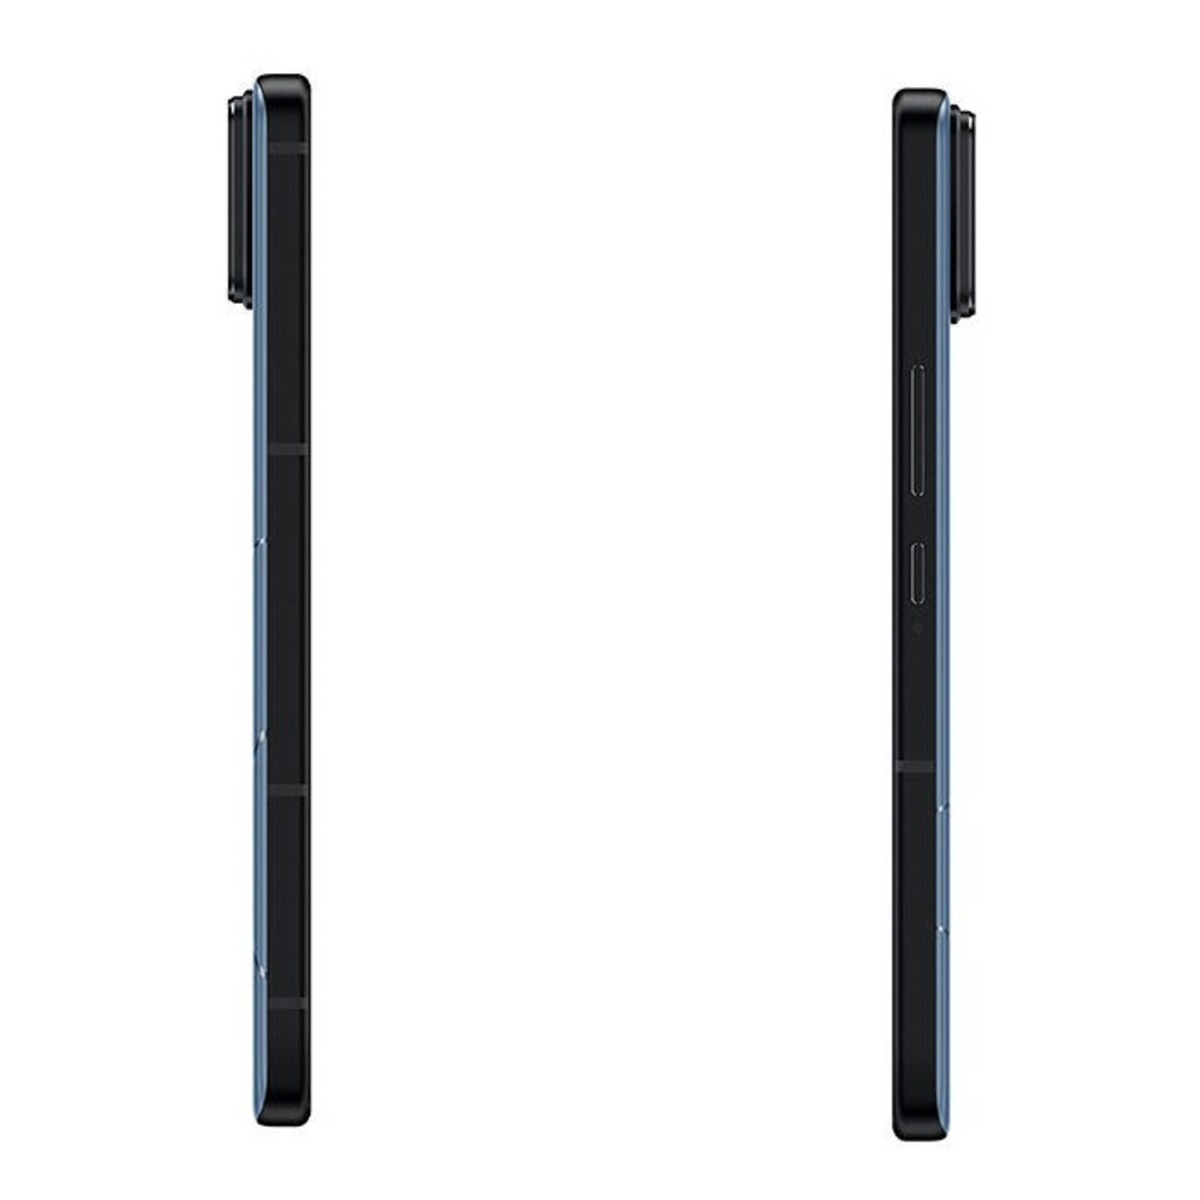 Смартфон Asus ZenFone 11 Ultra 16/512Gb (Цвет: Blue)  